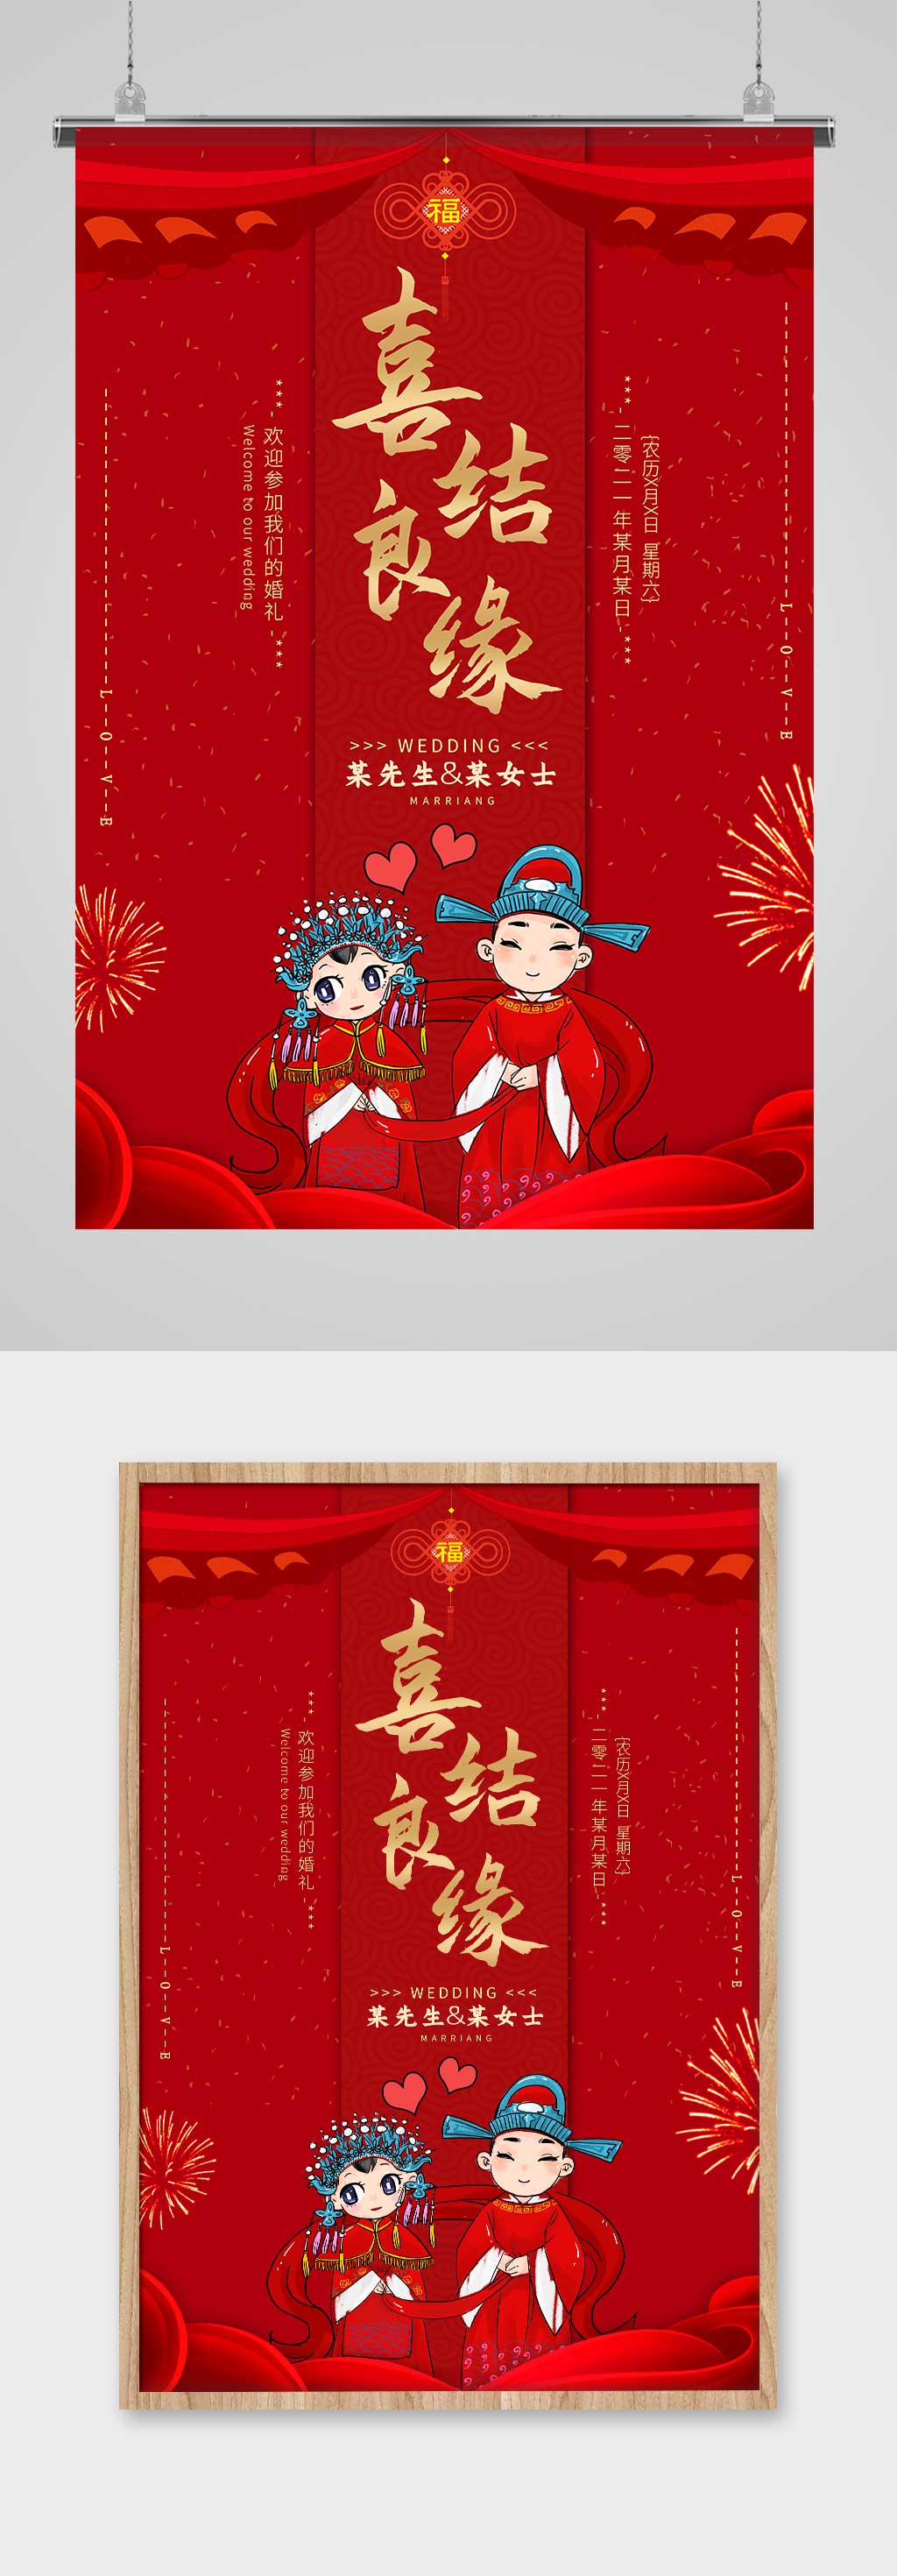 中式婚礼宣传文案图片